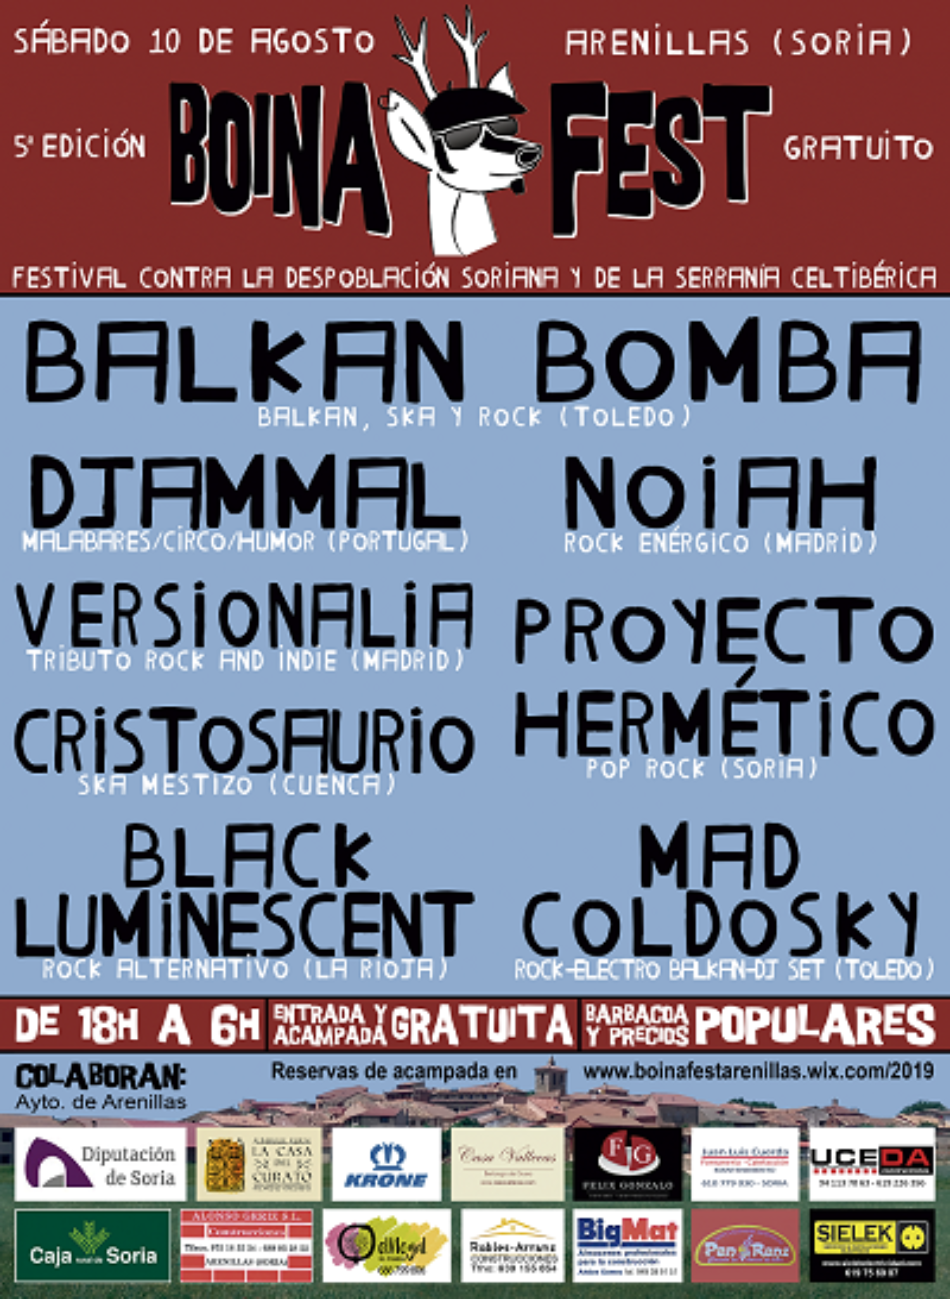 Este sábado se celebra el 1er festival contra la despoblación Boina Fest en Arenillas, que incrementará su población en un 1.000%